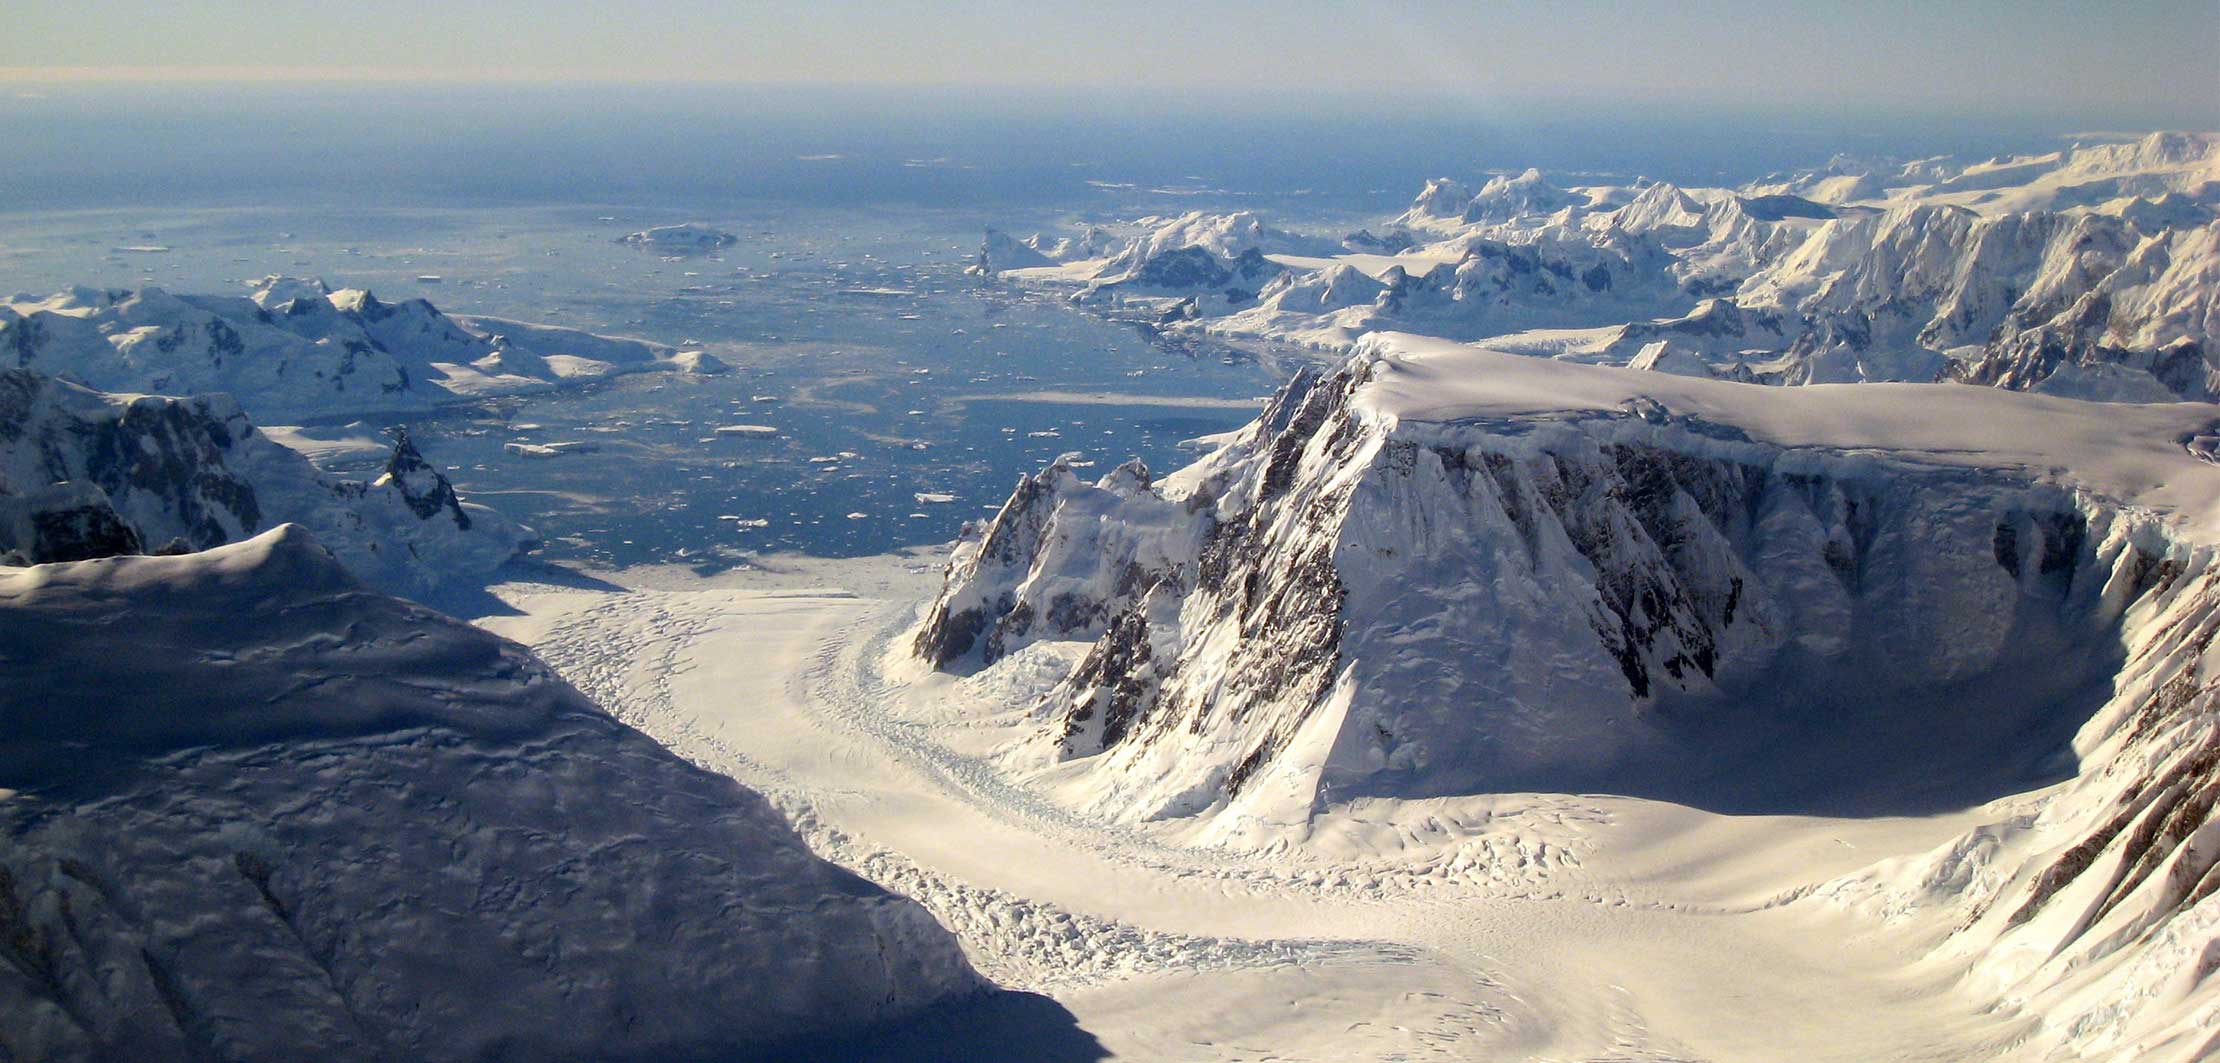 Glacier and Scenic view of North pole landscape